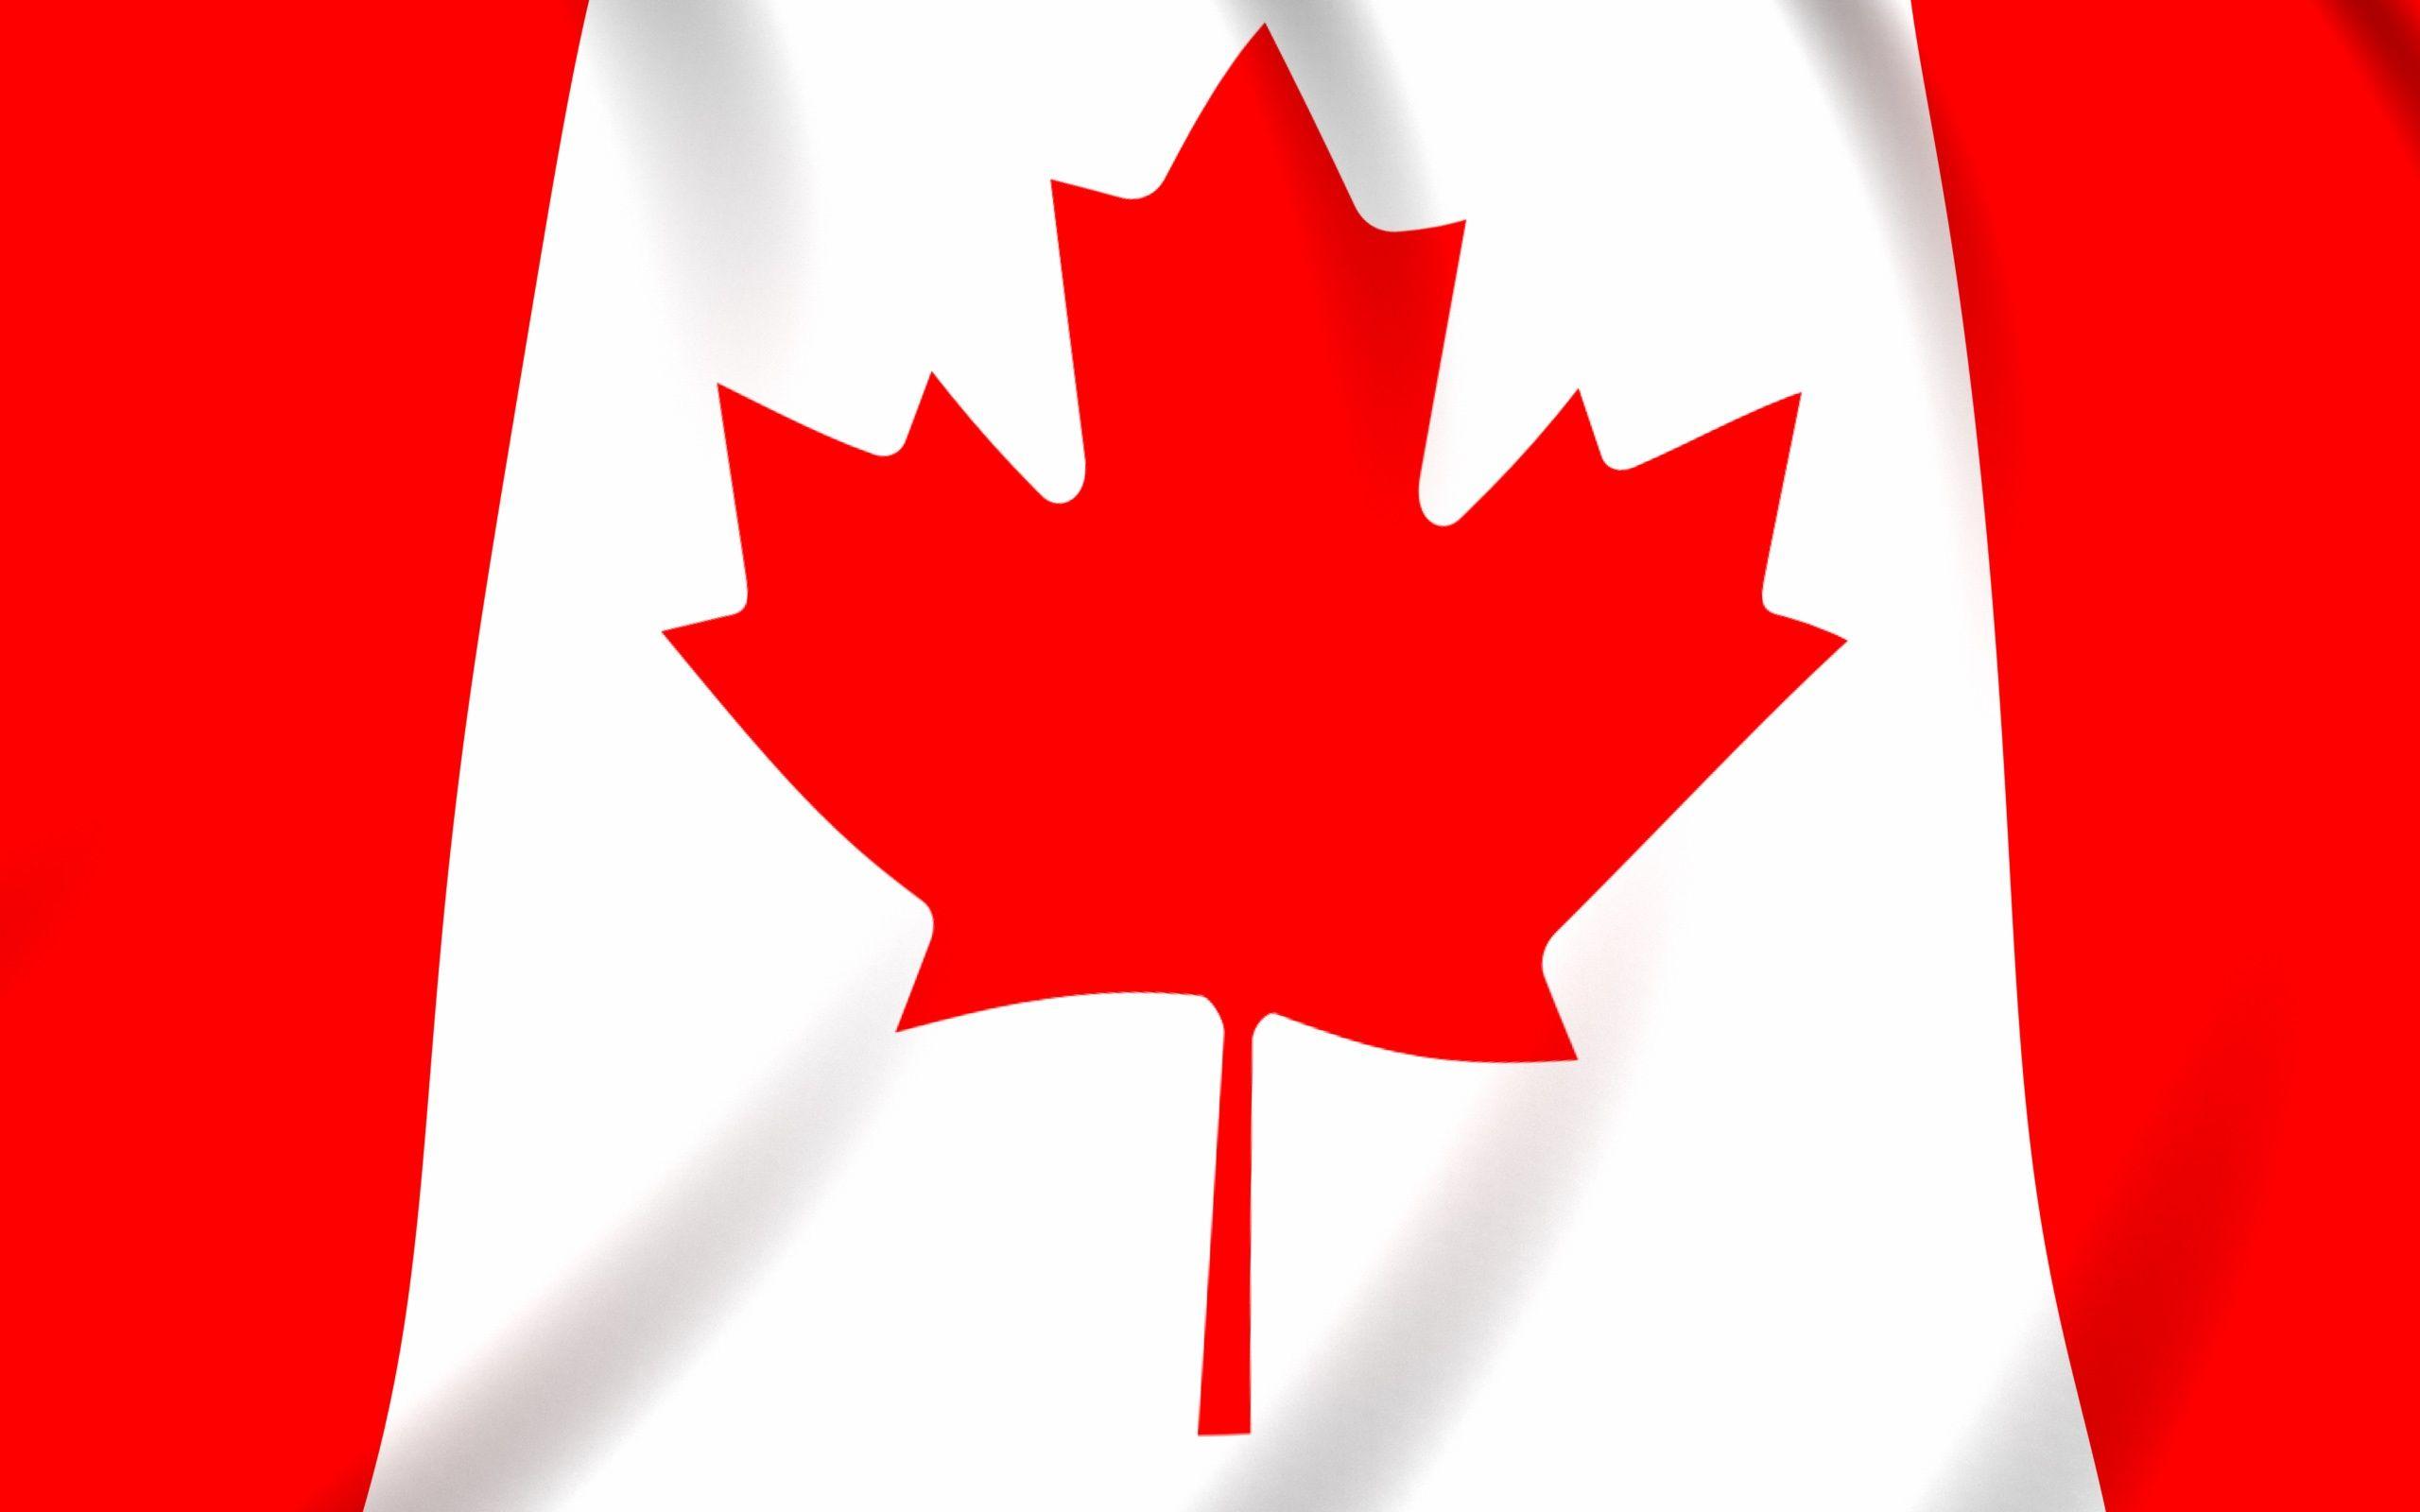 Part canada. Флаг Канада. Флаг Канады флаг Канады. Канада флаг и герб. 1965 Утверждён флаг Канады.